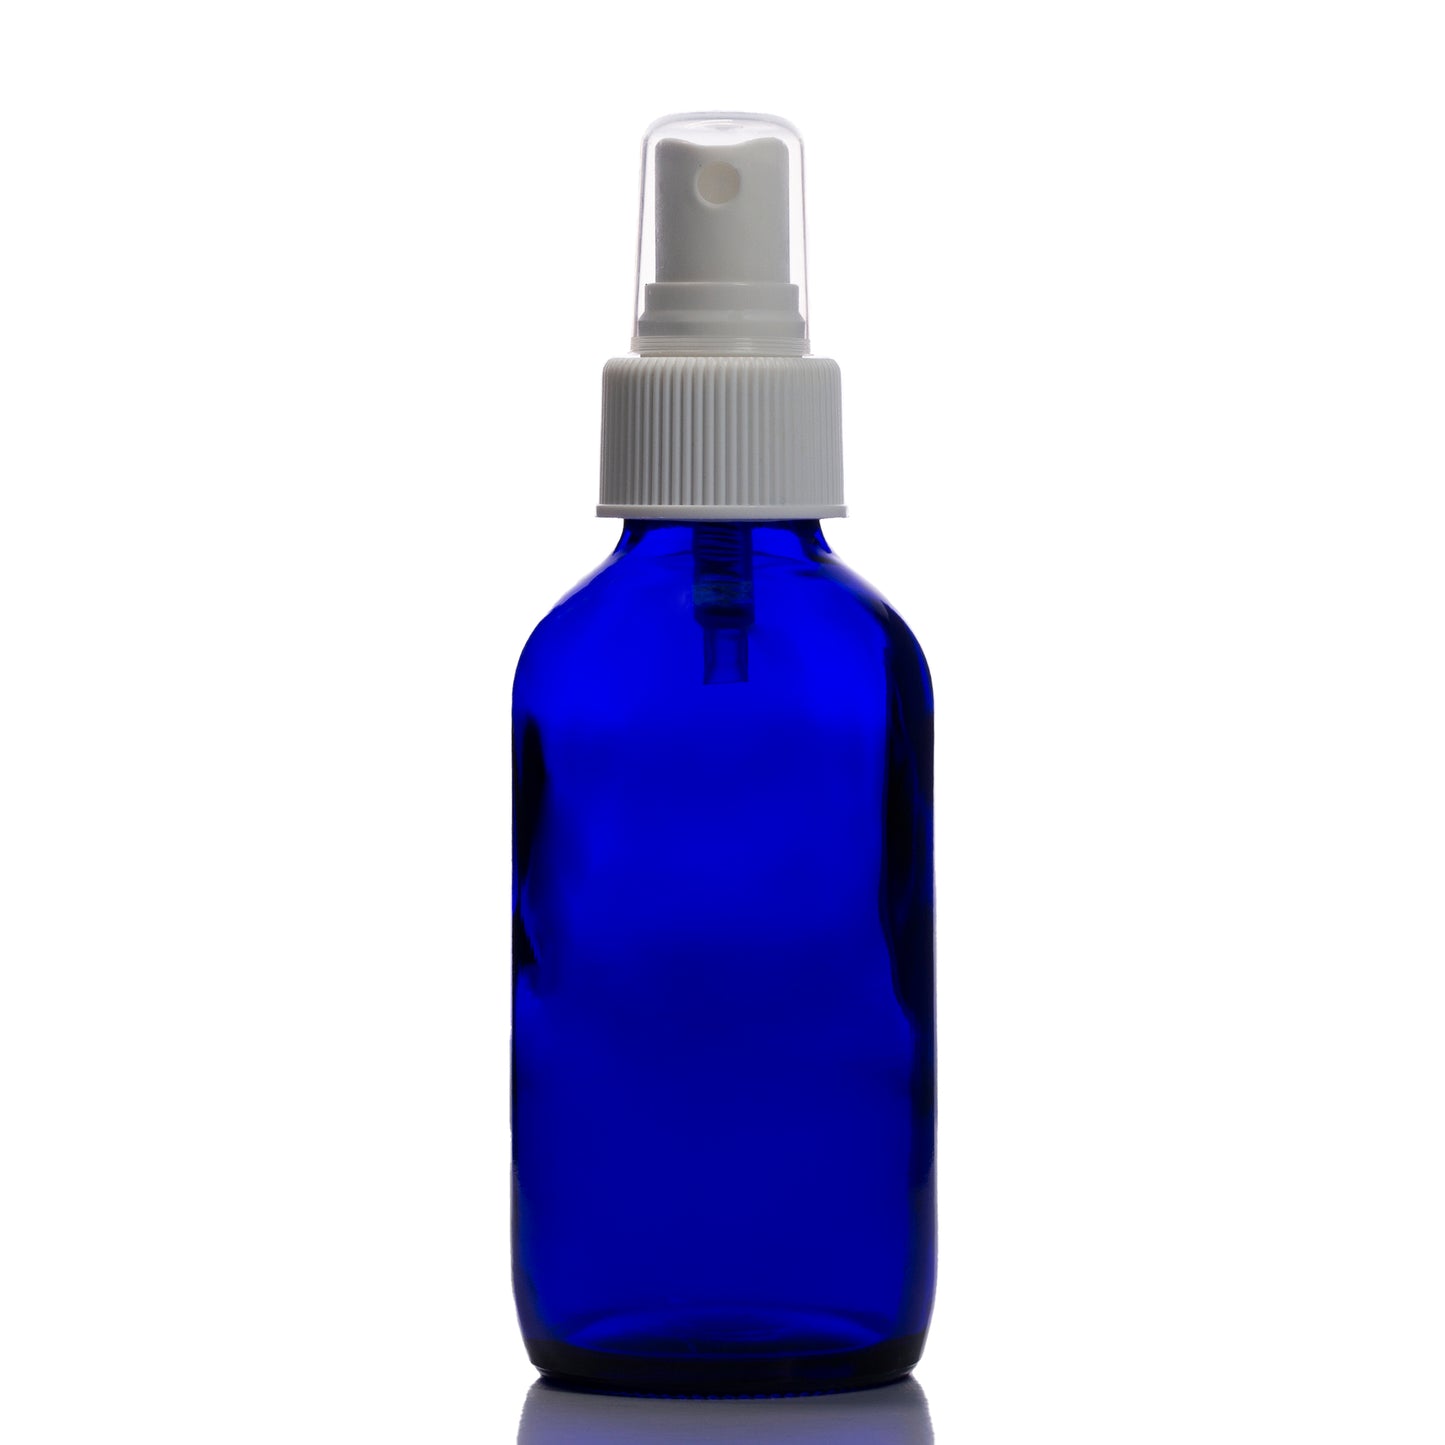 4 oz Blue Glass Boston Round Bottle with 24-410 White Fine Mist Sprayer